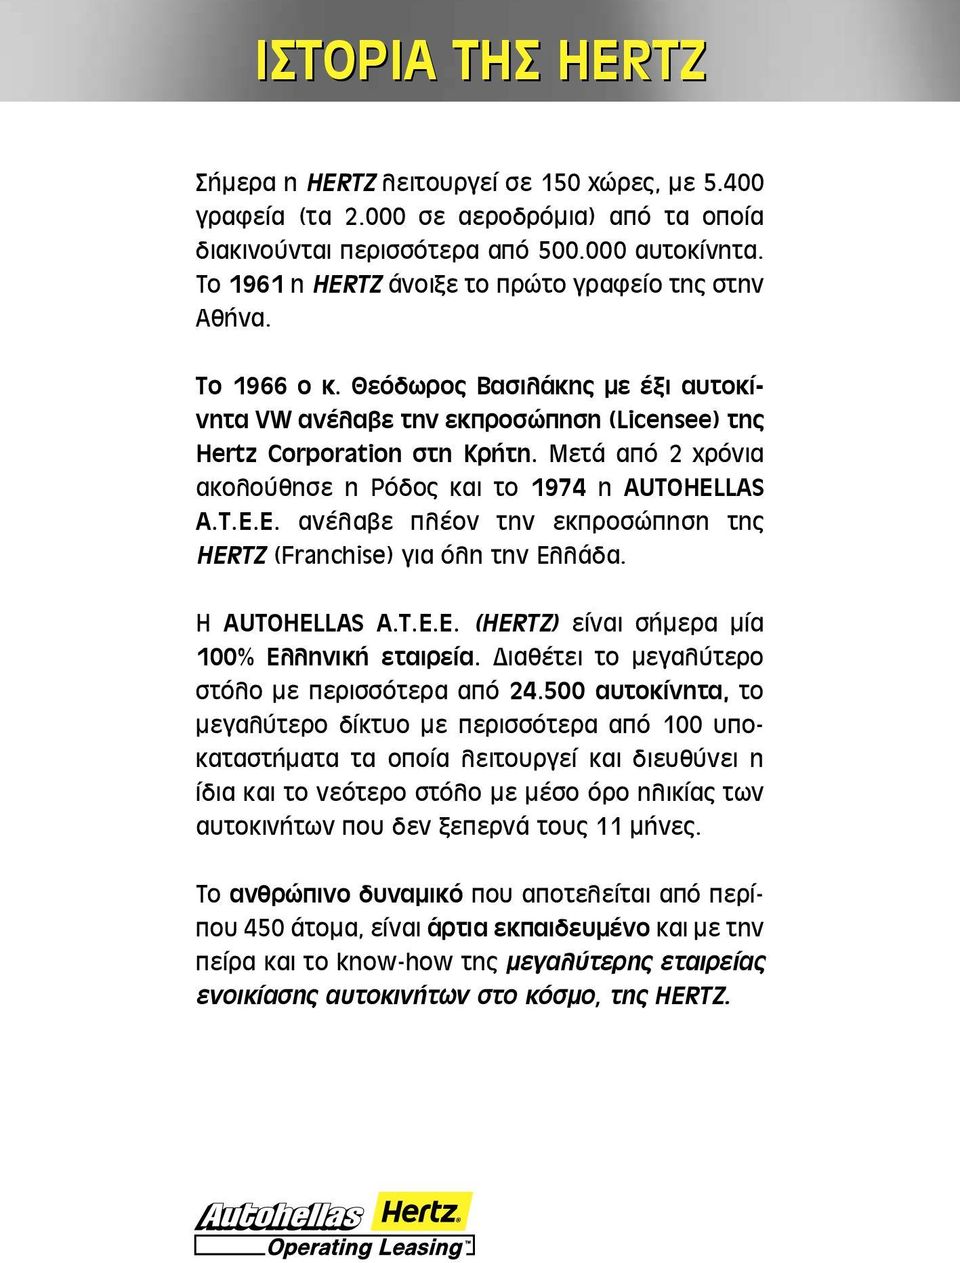 Μετά από 2 χρόνια ακολούθησε η Ρόδος και το 1974 η AUTOHELLAS A.T.E.E. ανέλαβε πλέον την εκπροσώπηση της HERTZ (Franchise) για όλη την Ελλάδα. Η AUTOHELLAS A.T.E.E. (HERTZ) είναι σήμερα μία 100% Ελληνική εταιρεία.